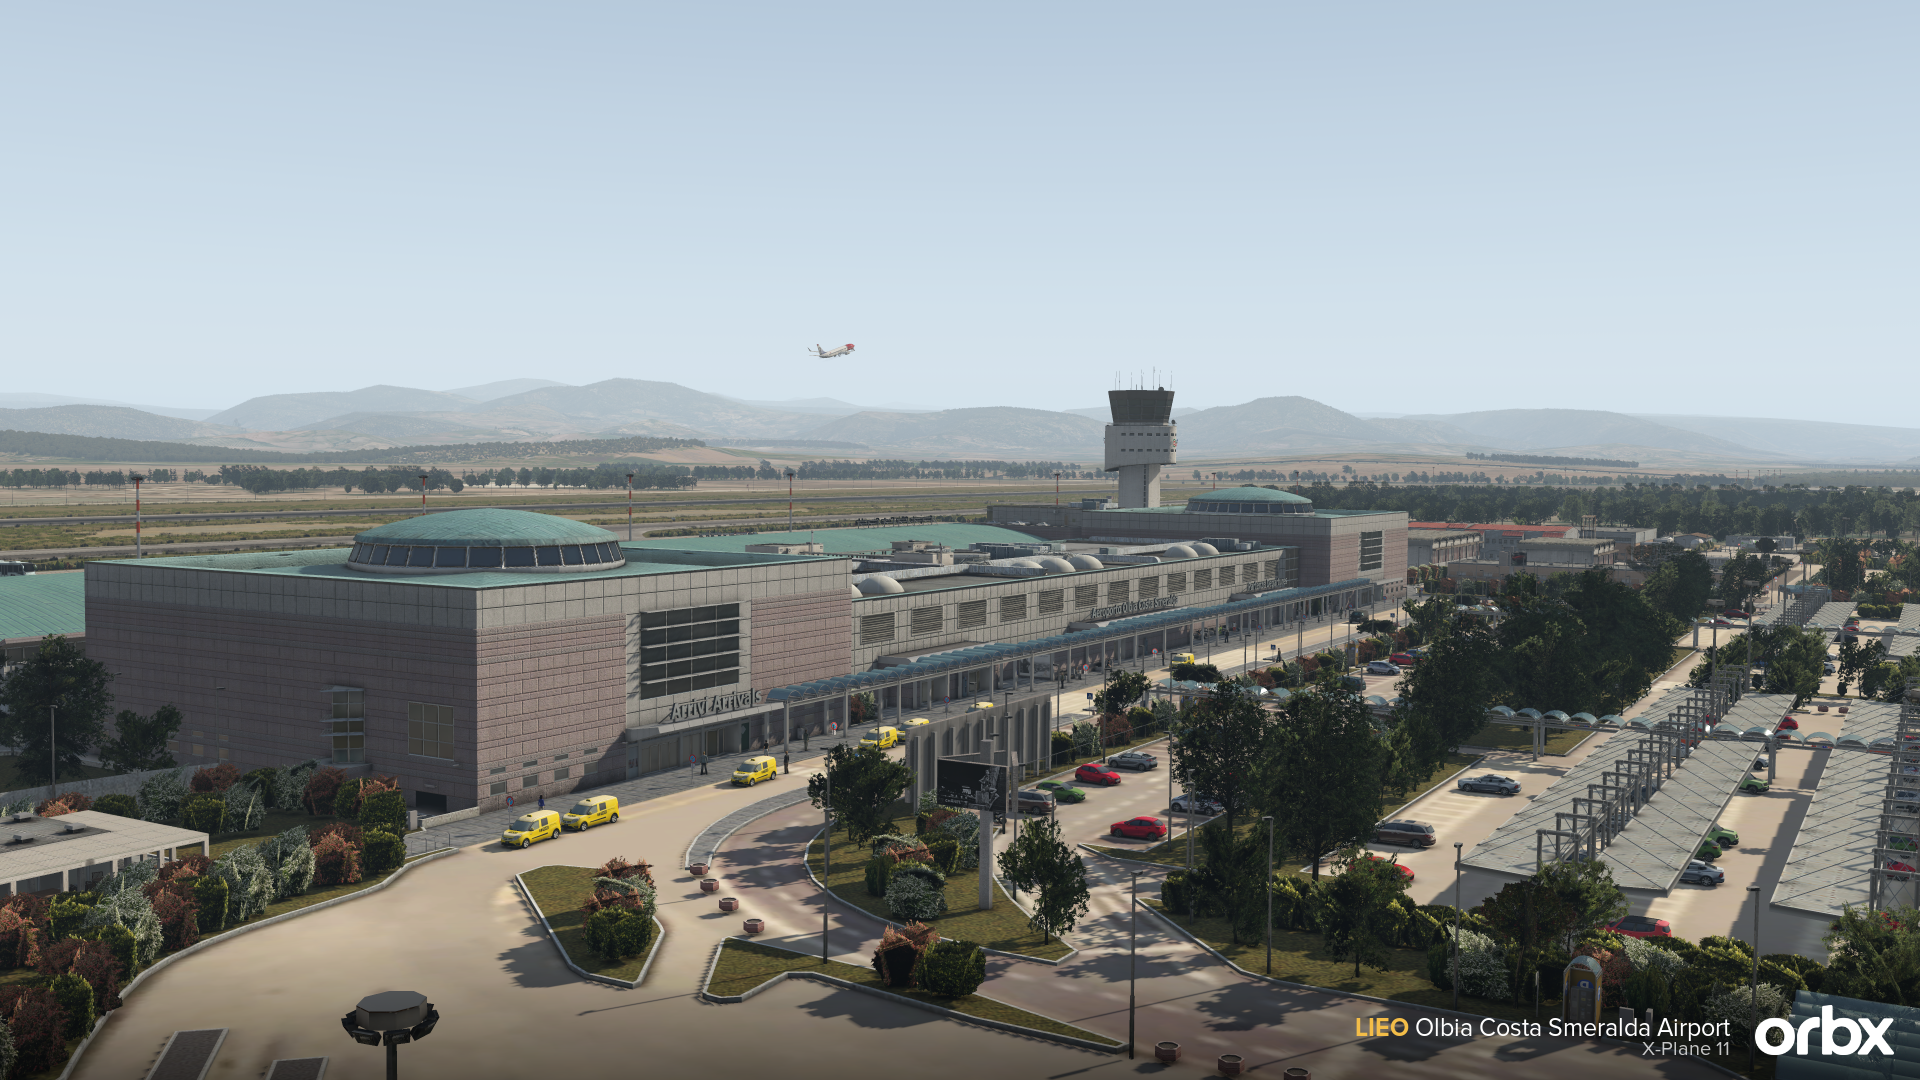 Orbx Announces Olbia Airport for X-Plane 11 - X-Plane, Orbx